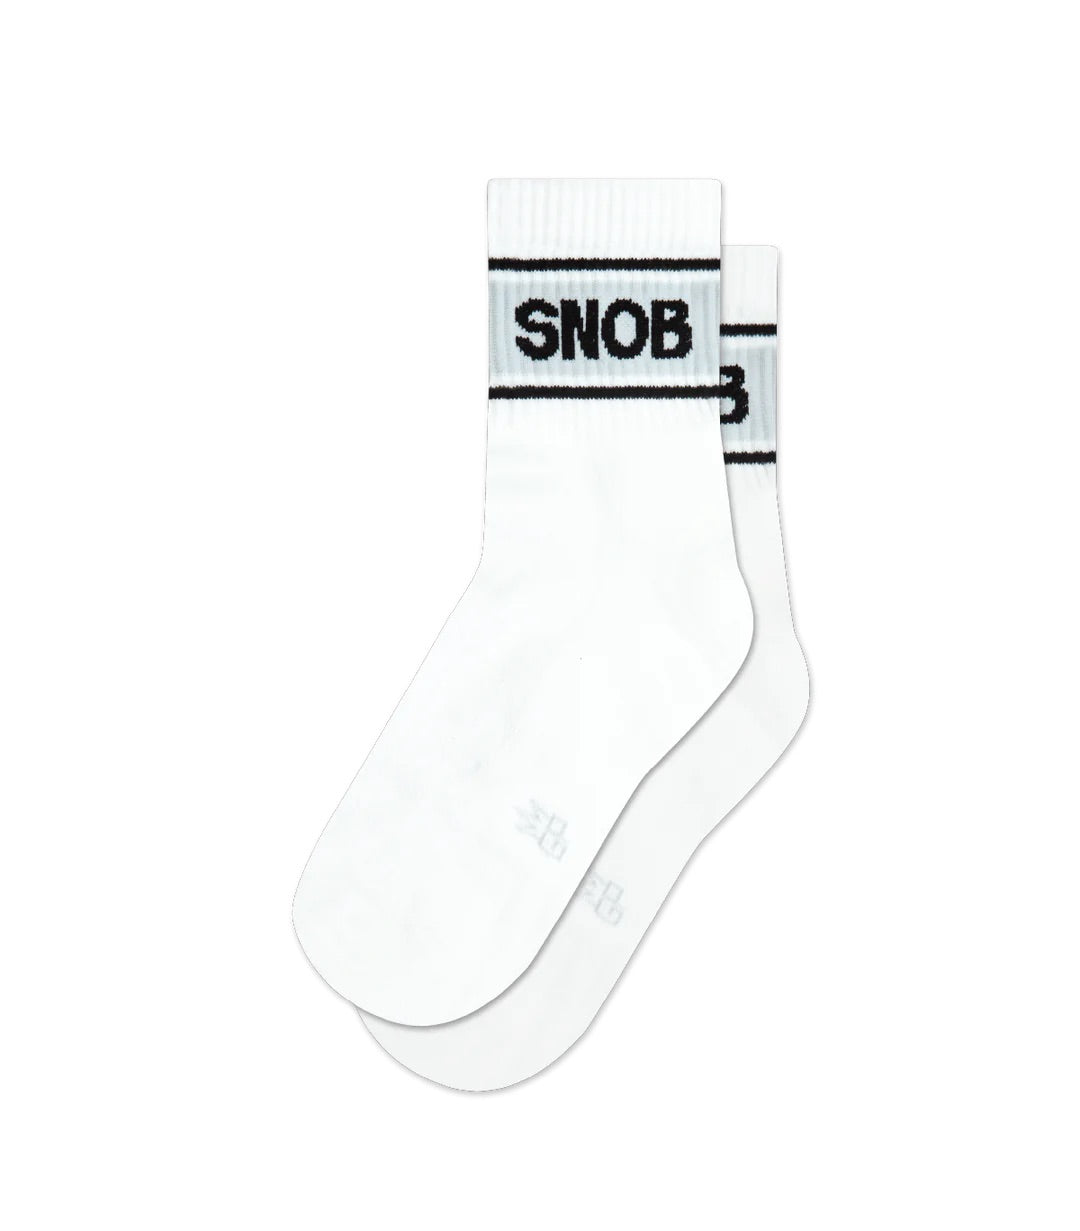 Gumball Poodle Socks: Snob